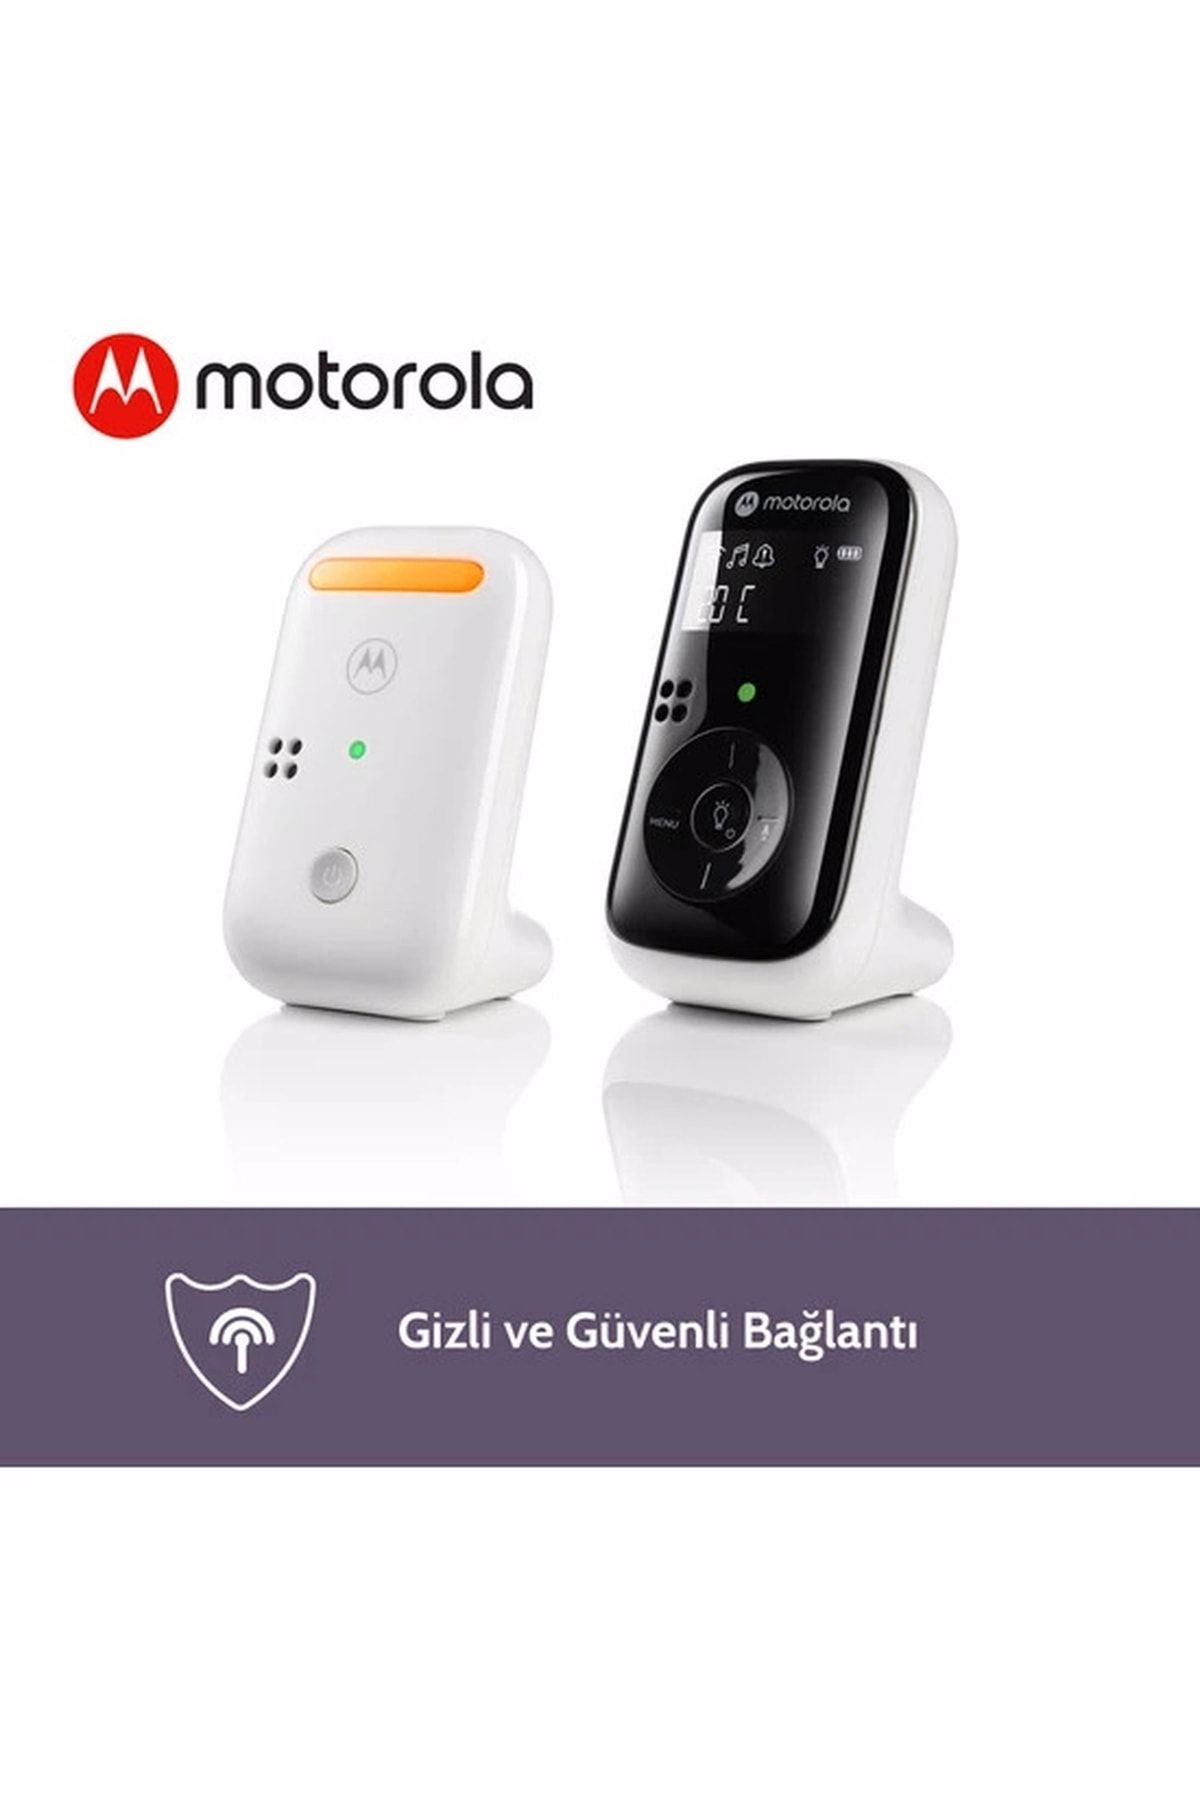 Motorola Dijital Bebek Telsizi - Hassas Mikrofon Ve Net Hoparlör Sayesinde Bebeğiniz Güvende